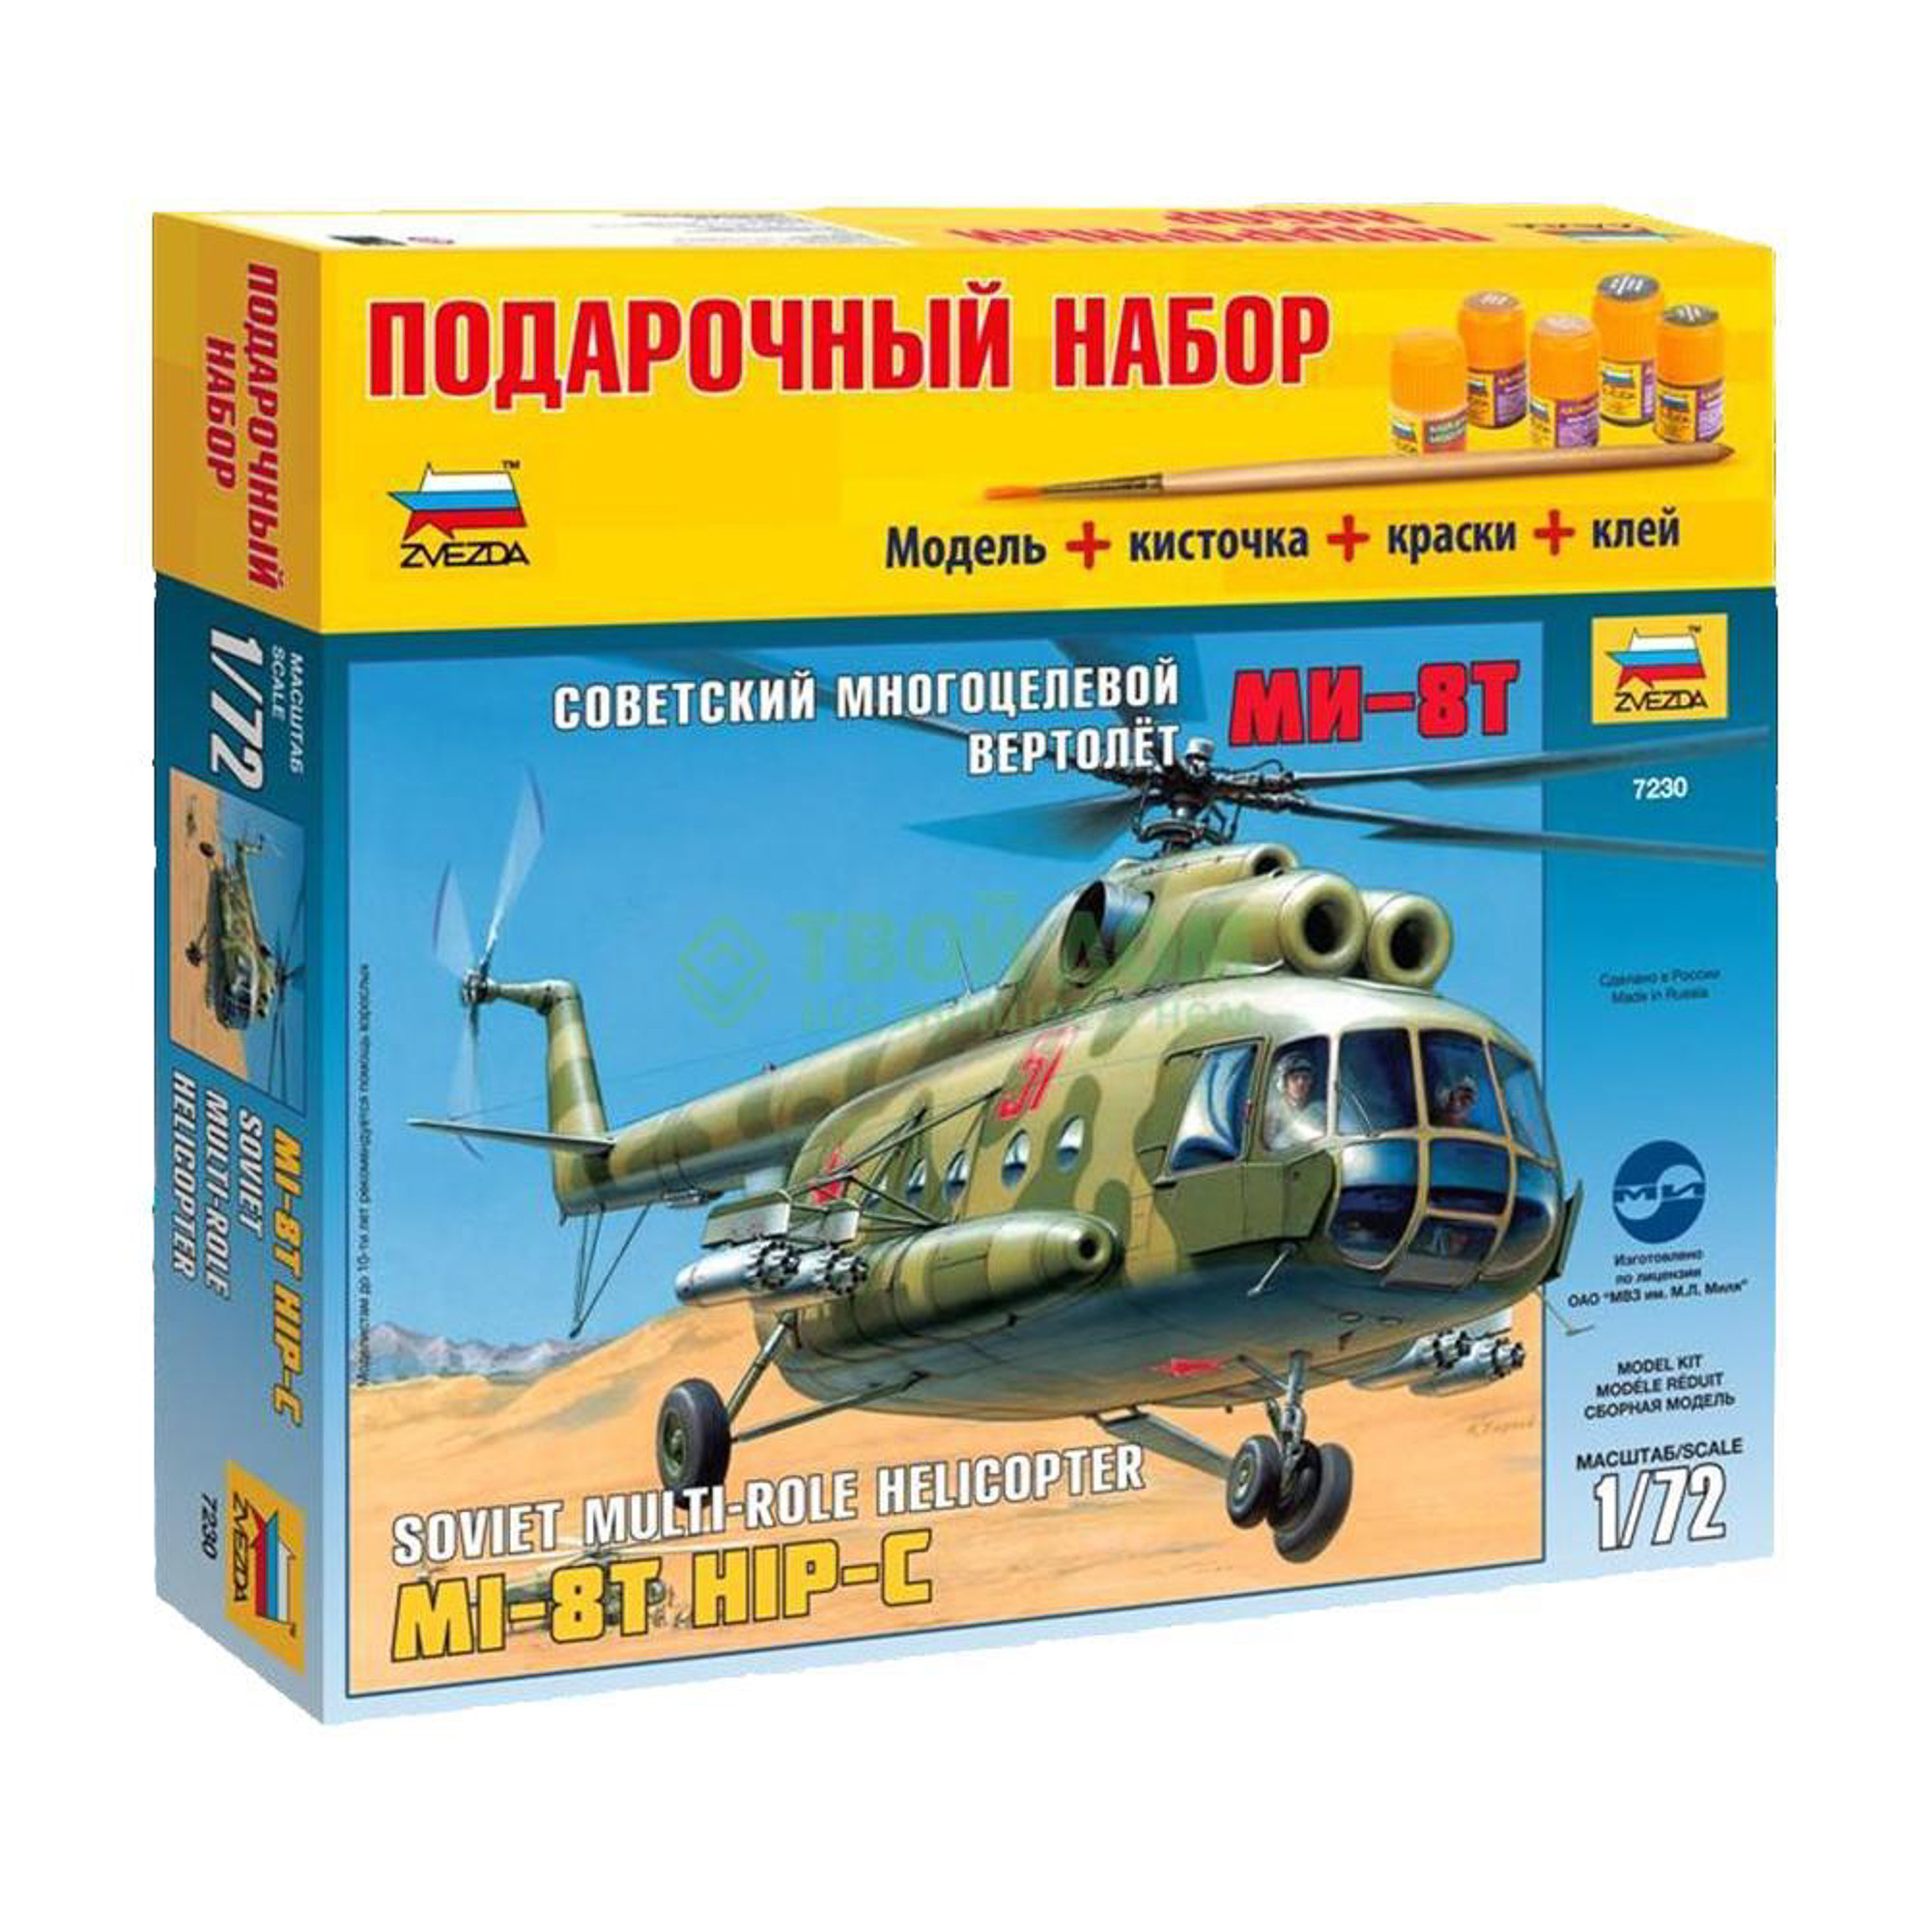 Модель для склеивания Звезда Советский многоцелевой вертолёт Ми-8Т (7230З), цвет зеленый